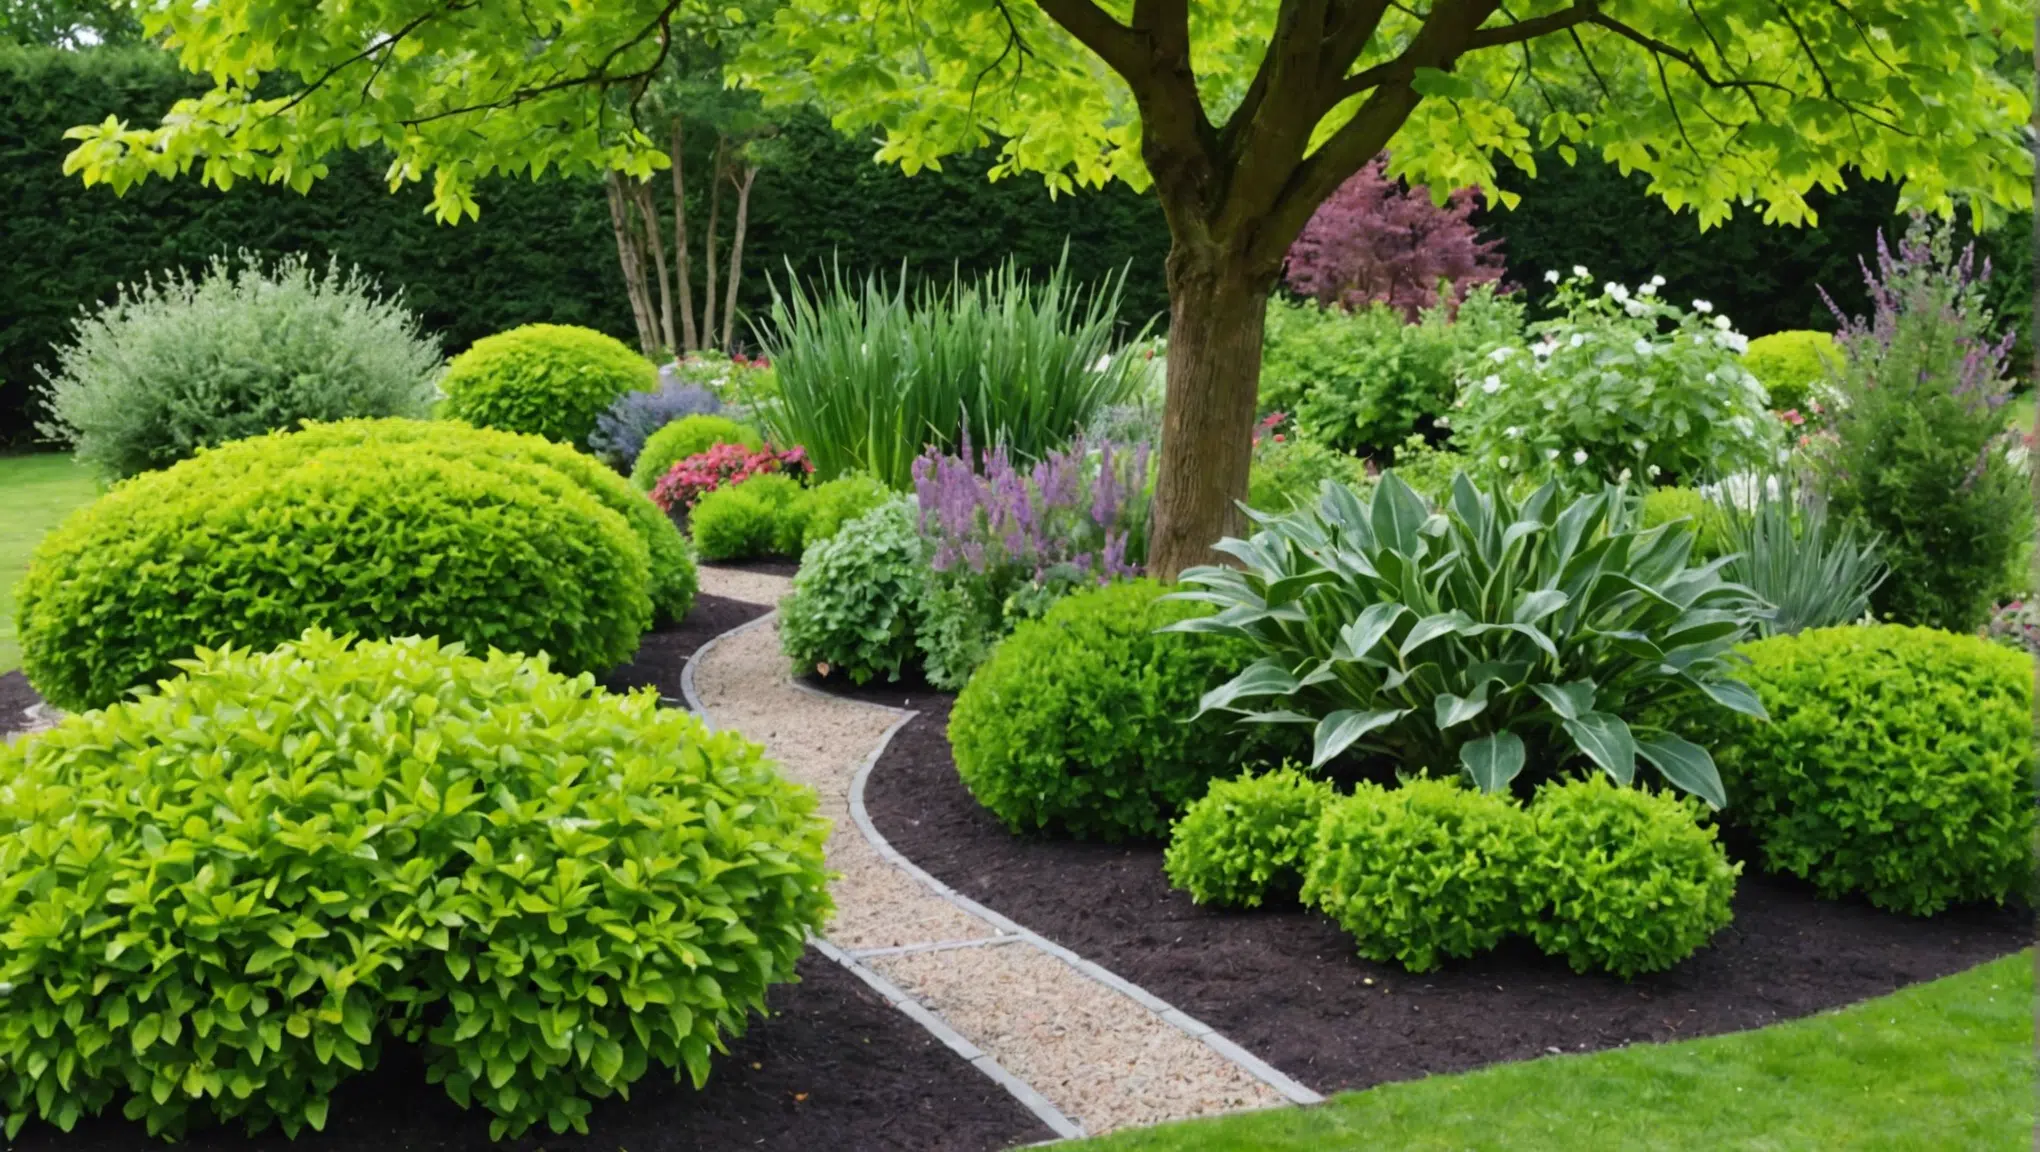 découvrez les meilleurs conseils pour aménager votre jardin avec trestresnadia.fr. astuces d'aménagement, idées de décoration et inspiration pour sublimer votre espace extérieur.